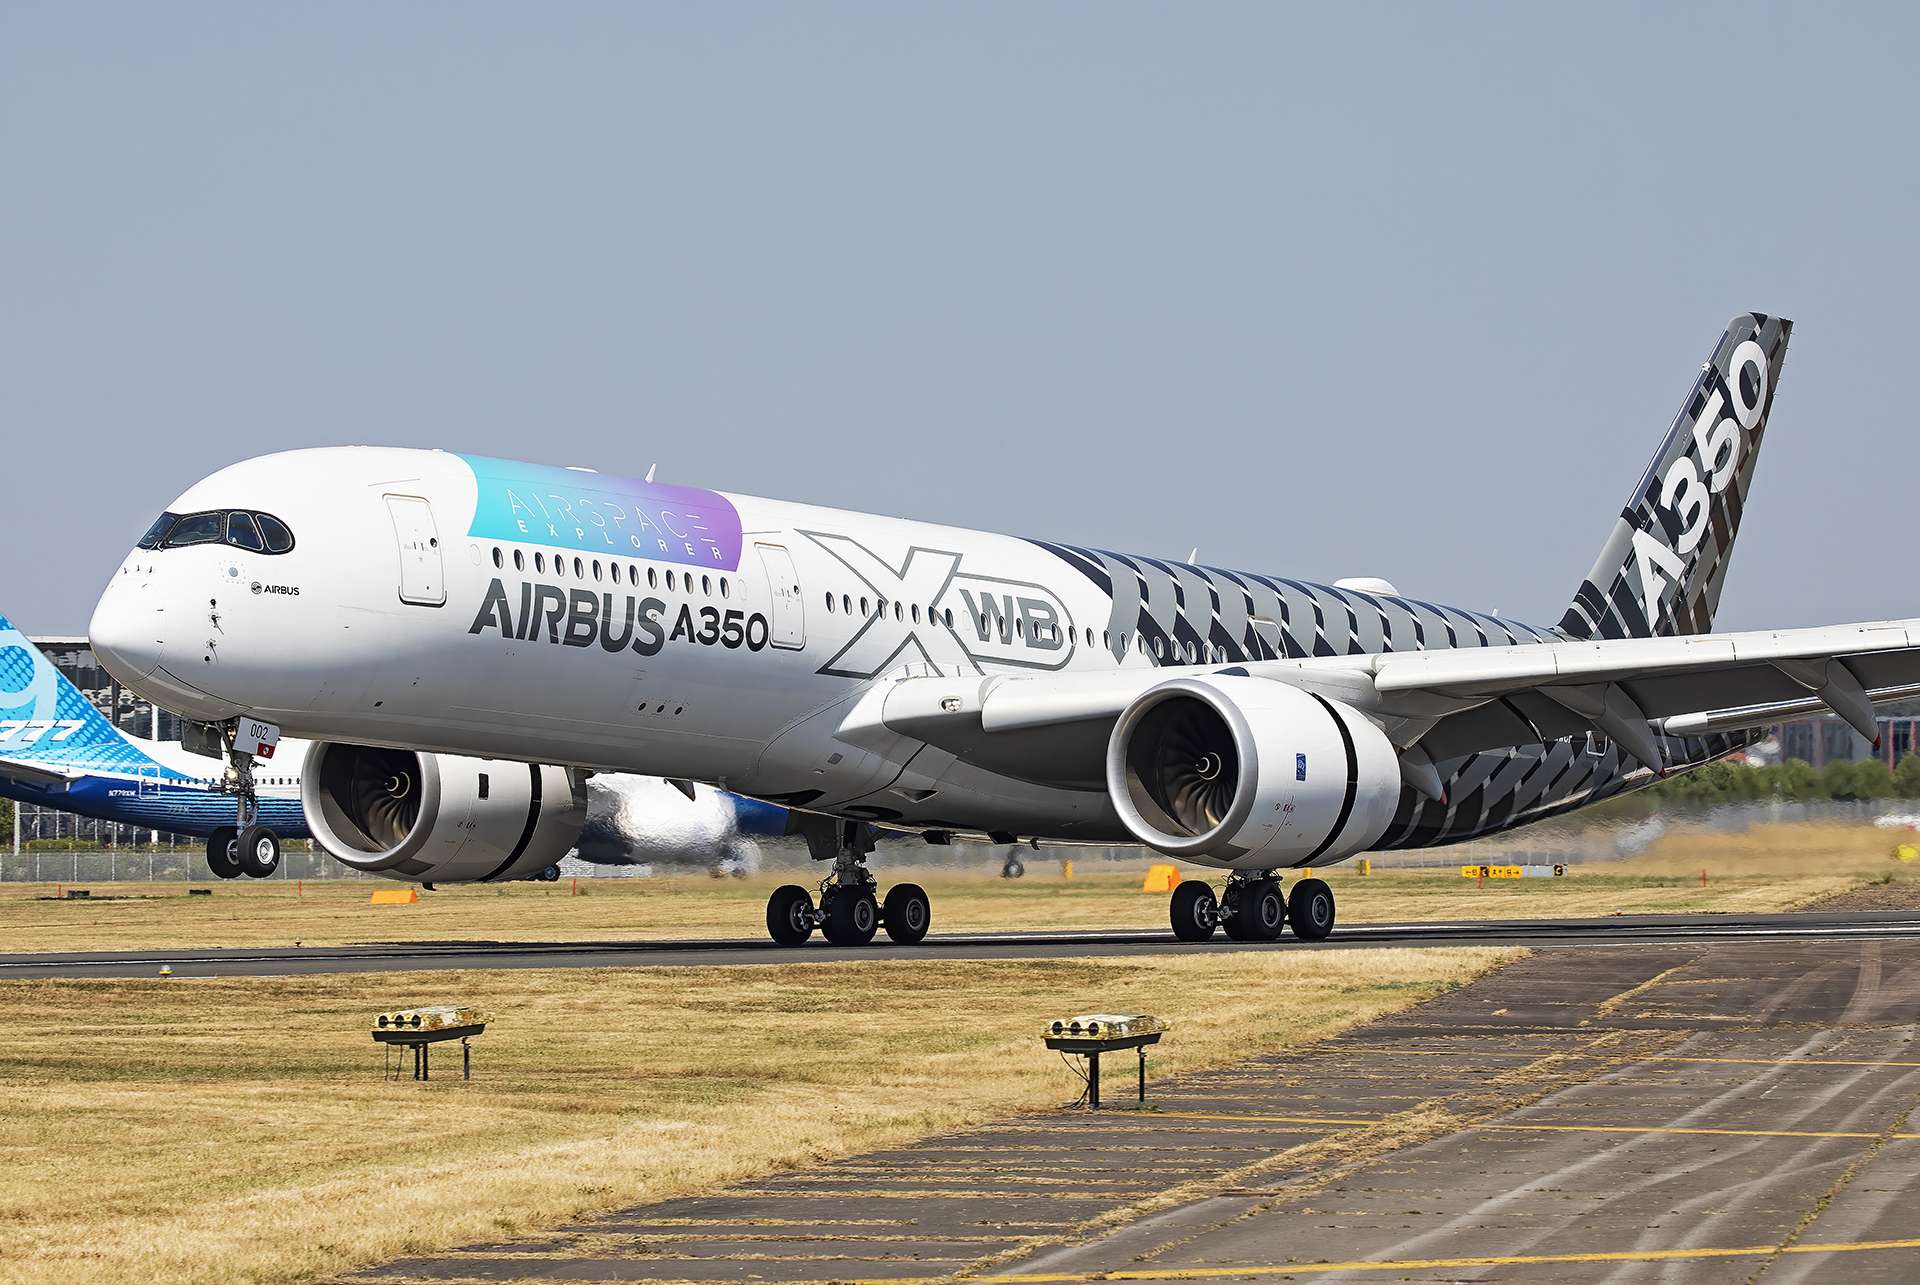 Dubai Airshow Overall Recap: Airbus Scores Confidence in A350